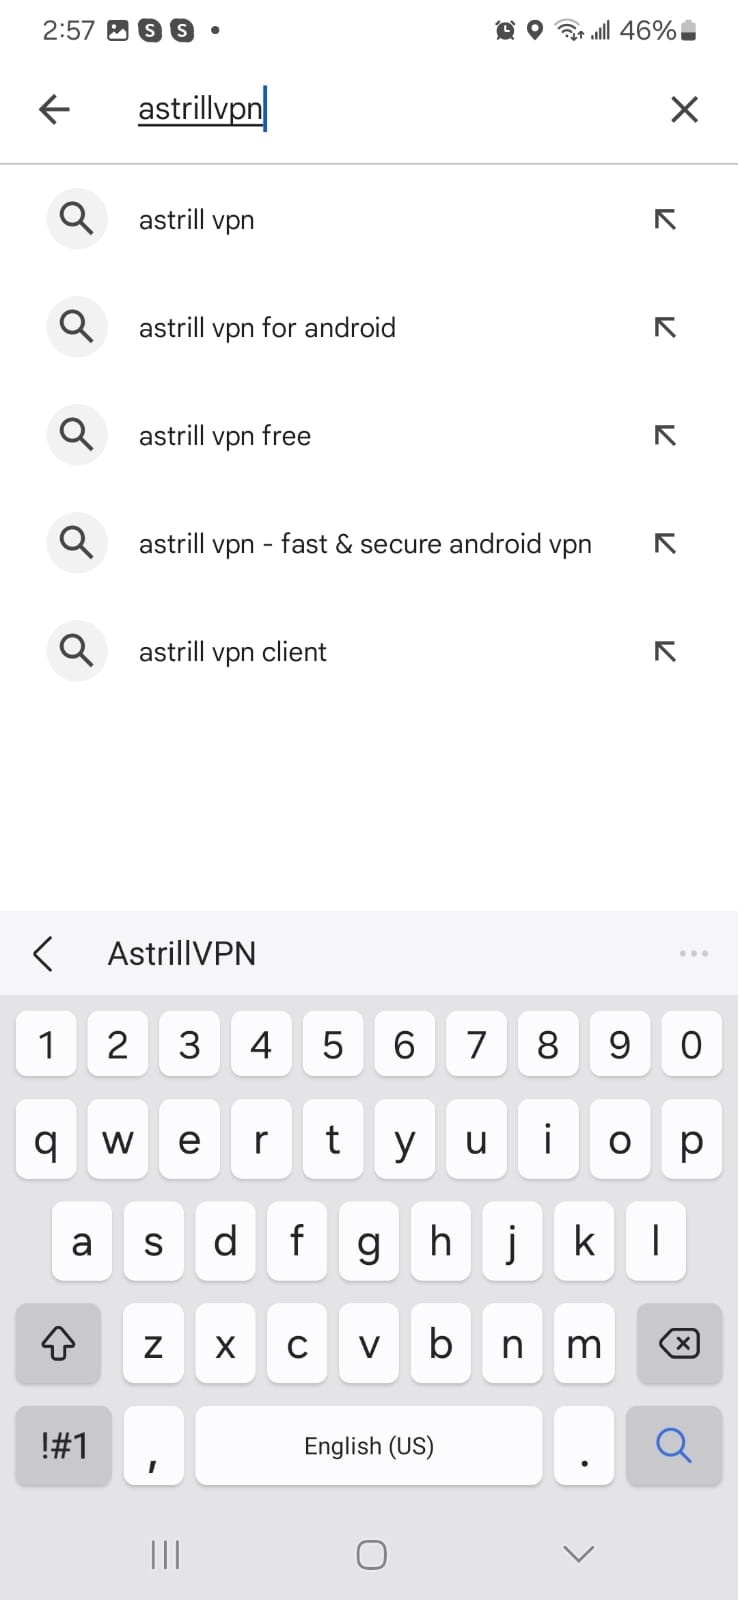 search for AstrillVPN